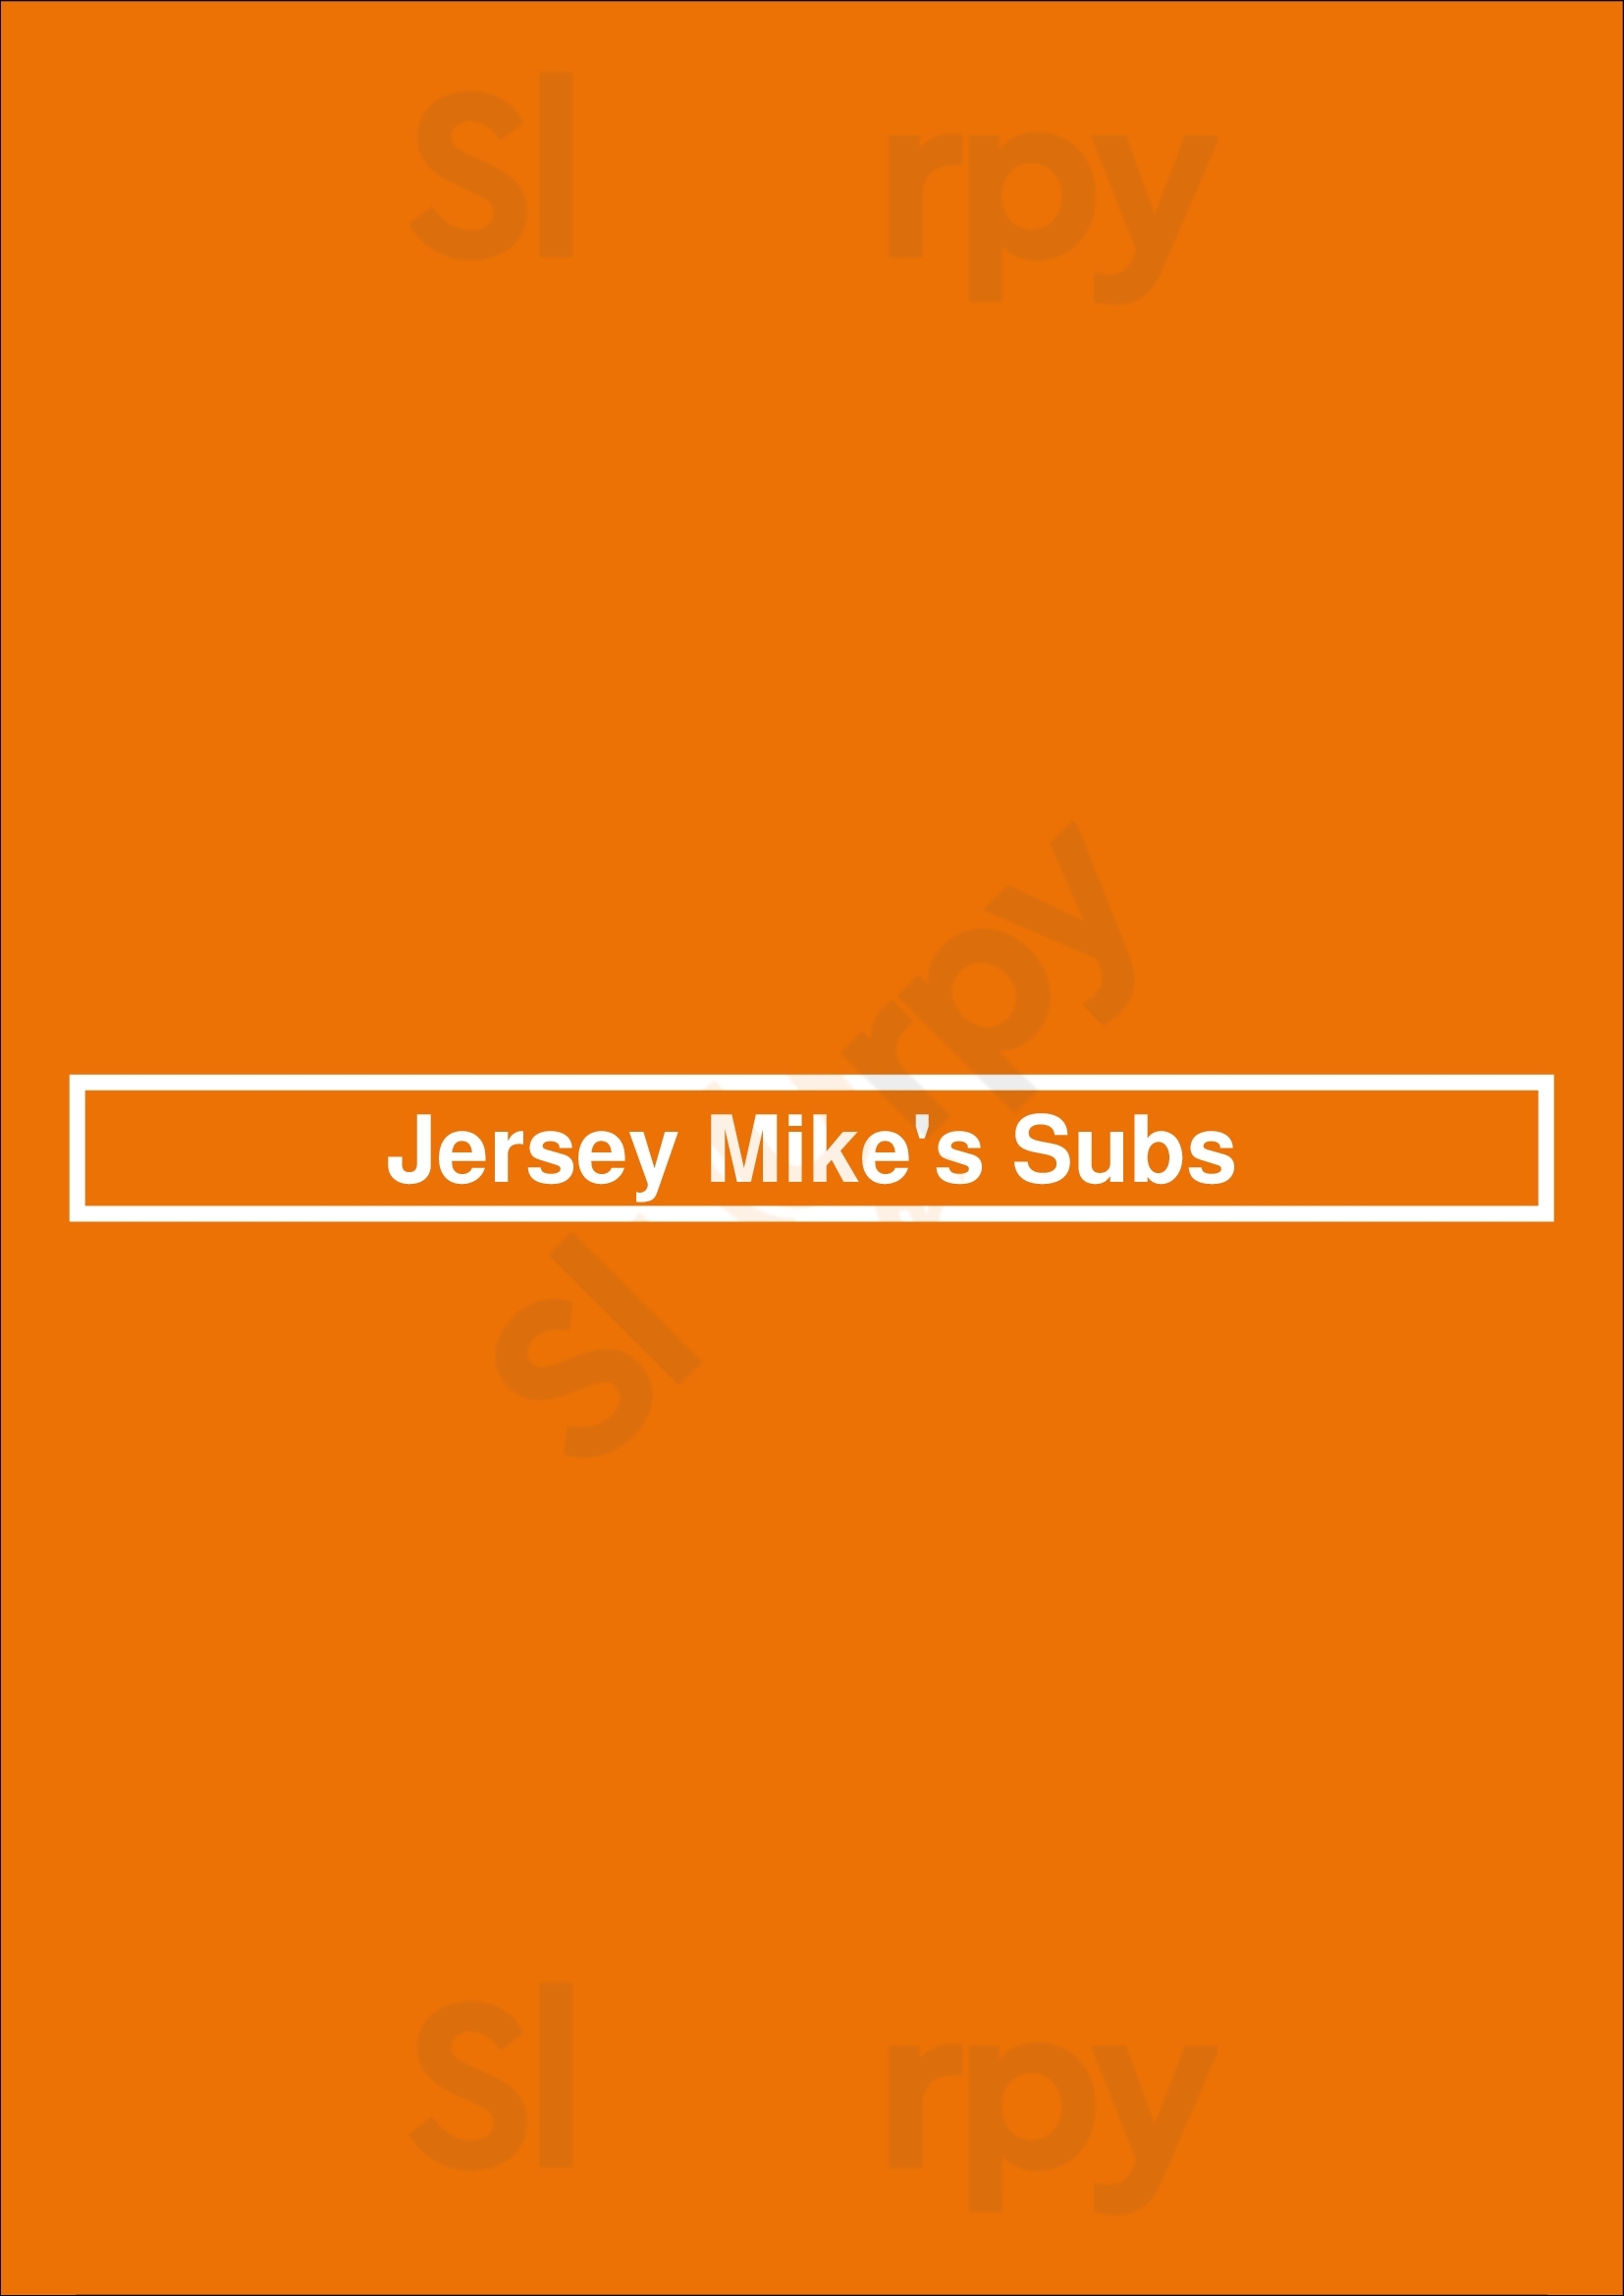 Jersey Mike's Subs Reno Menu - 1